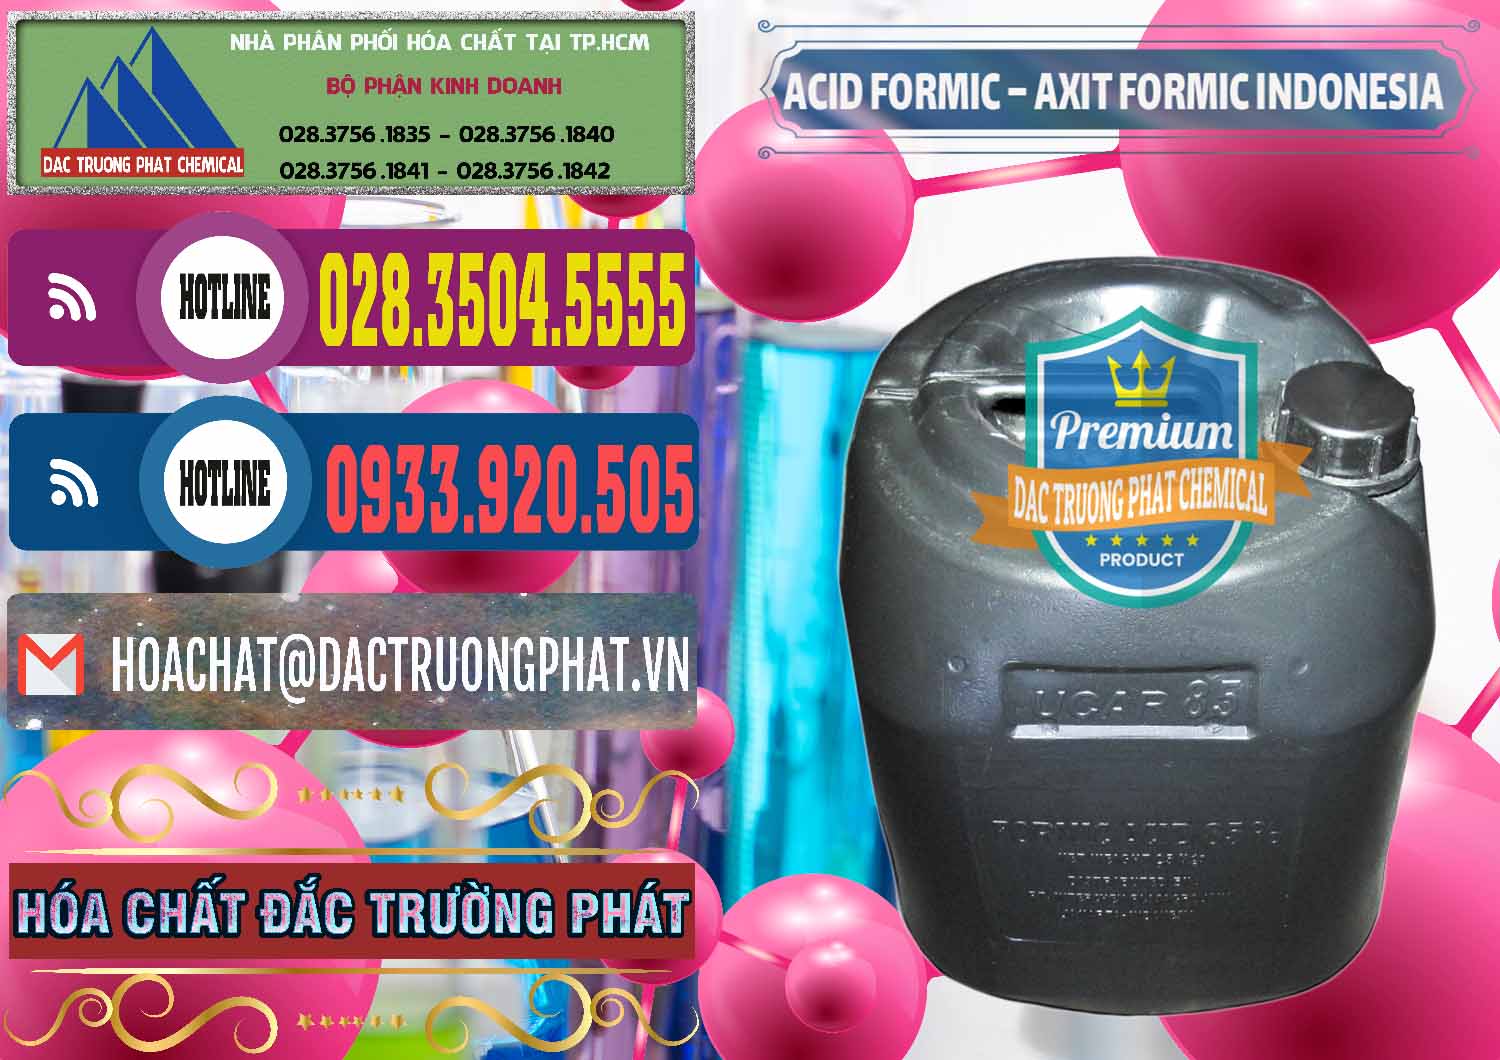 Nơi cung ứng _ bán Acid Formic - Axit Formic Indonesia - 0026 - Cty chuyên cung ứng & phân phối hóa chất tại TP.HCM - muabanhoachat.com.vn